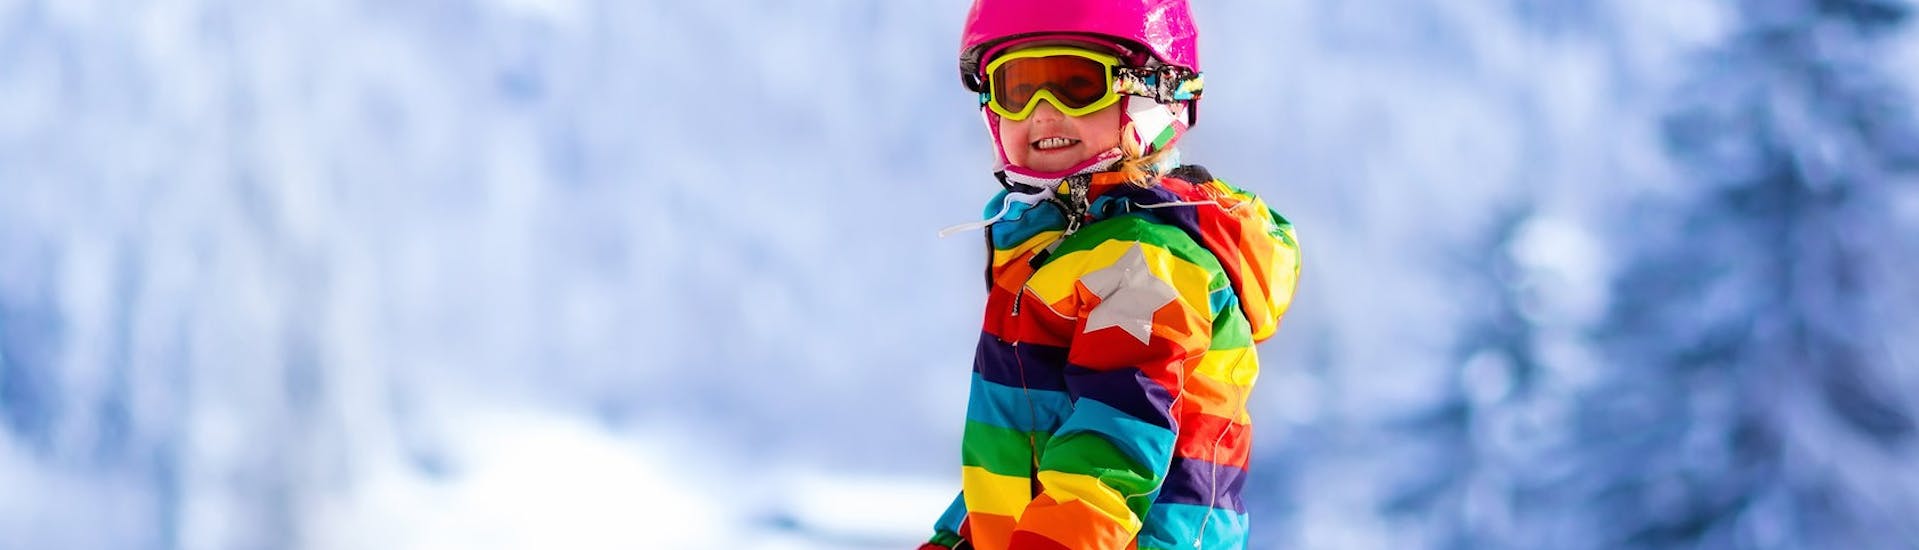 Una bambina si diverte durante le Lezioni private di sci per bambini (dai 3 anni) per tutti i livelli con Promescaiol Ski & Snow Academy Daolasa.